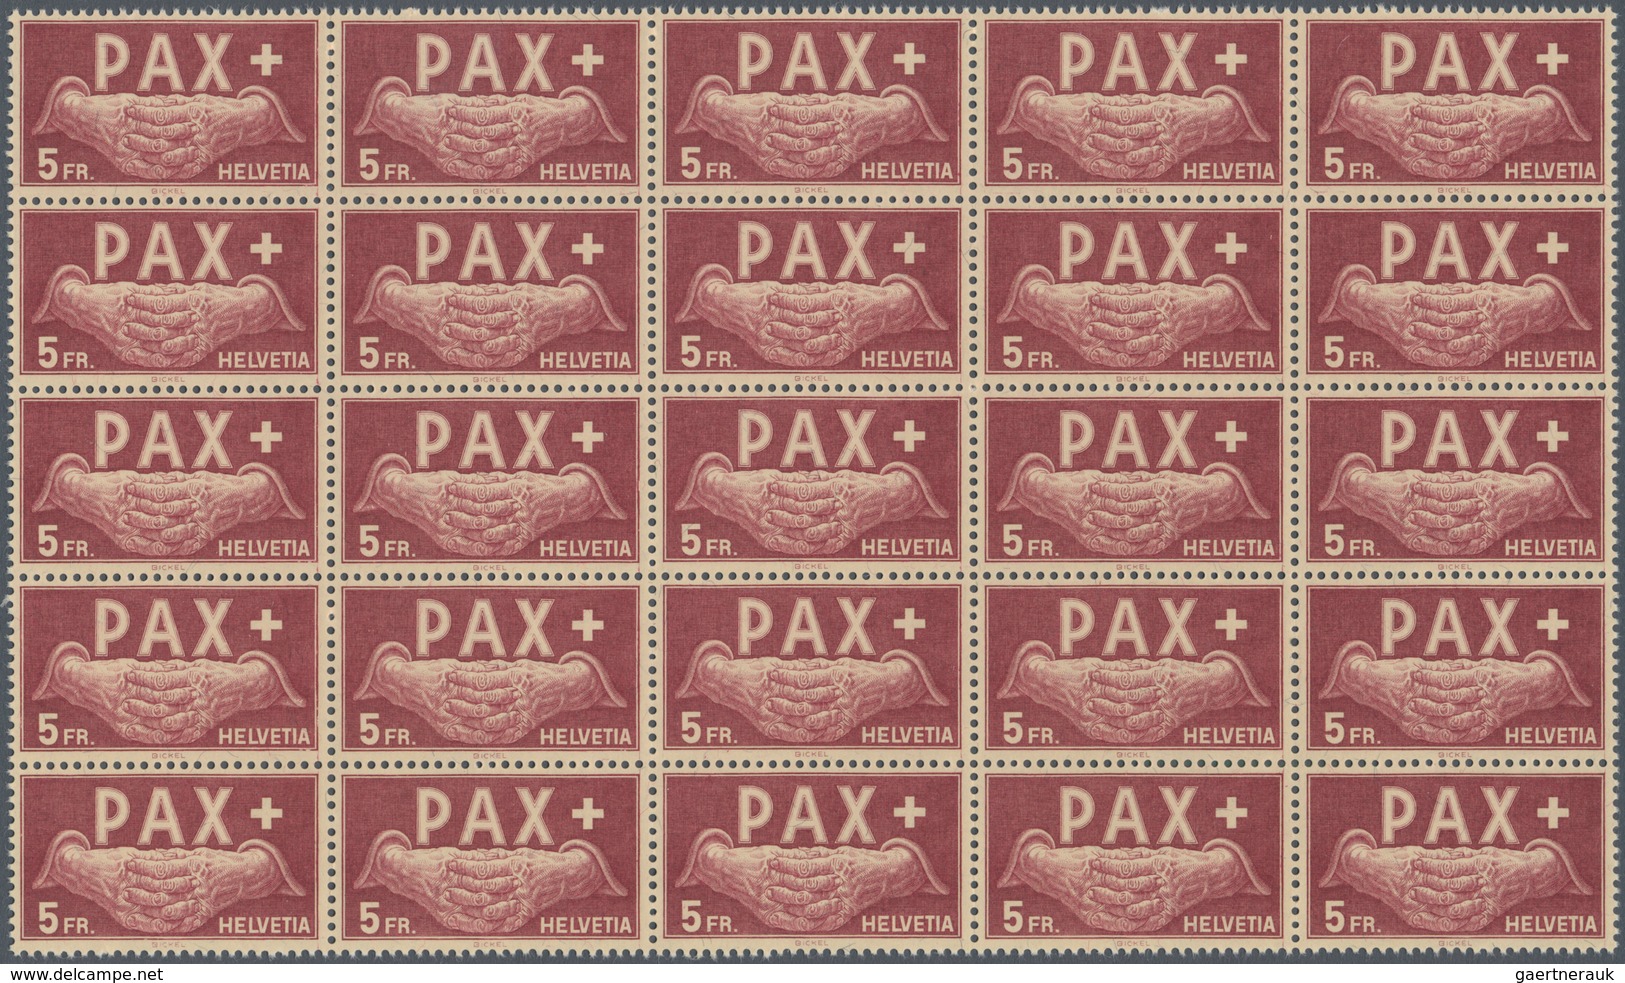 01627 Schweiz: 1945 PAX: Kompletter Satz in Bogenteilen zu 25 Marken (5x5), teils mit Bogenrändern, tadell